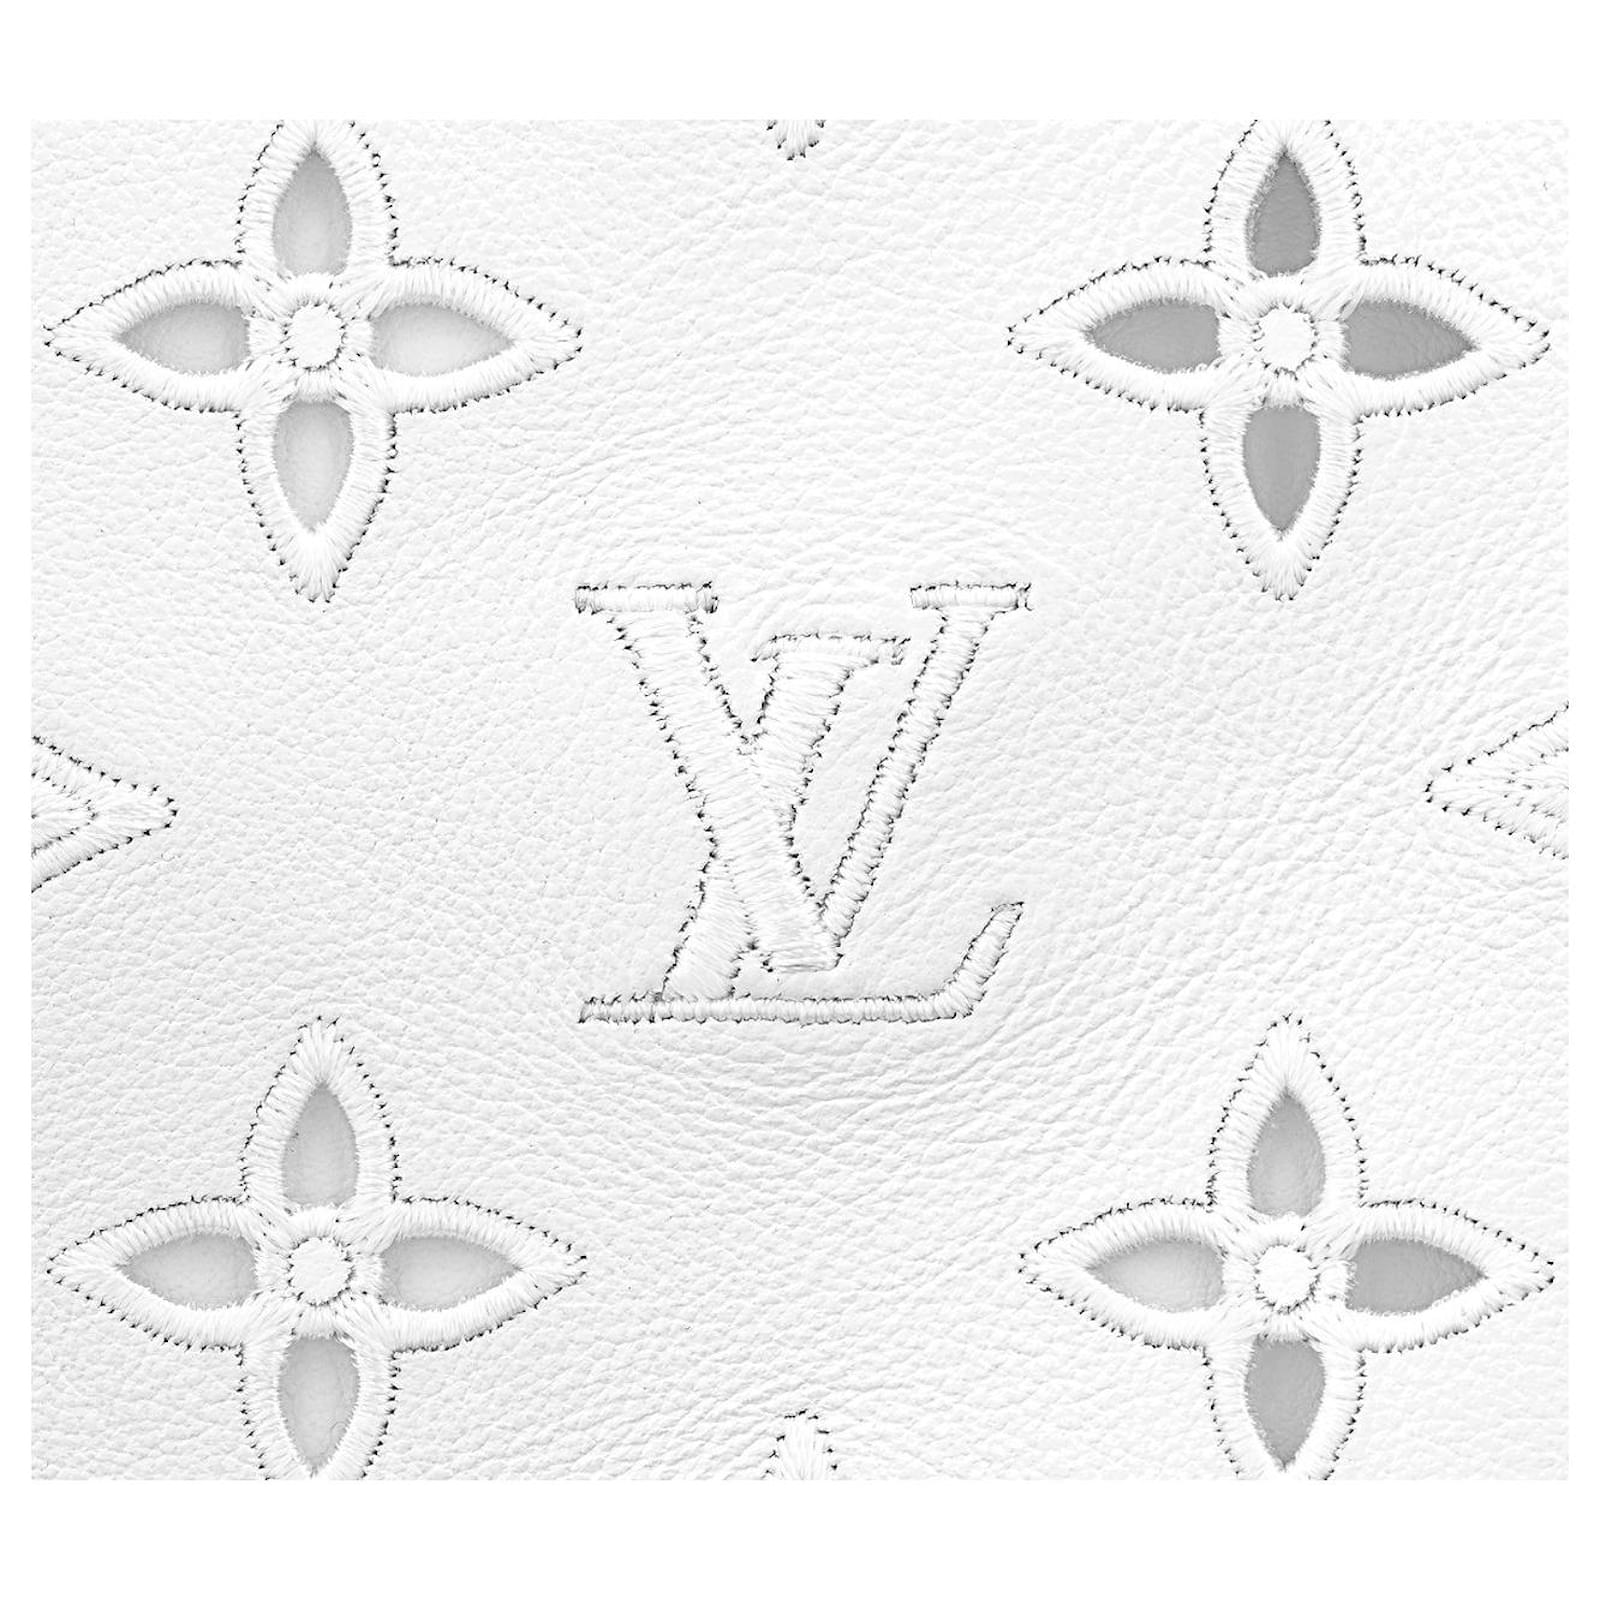 Louis Vuitton white NéoNoé Bucket Bag